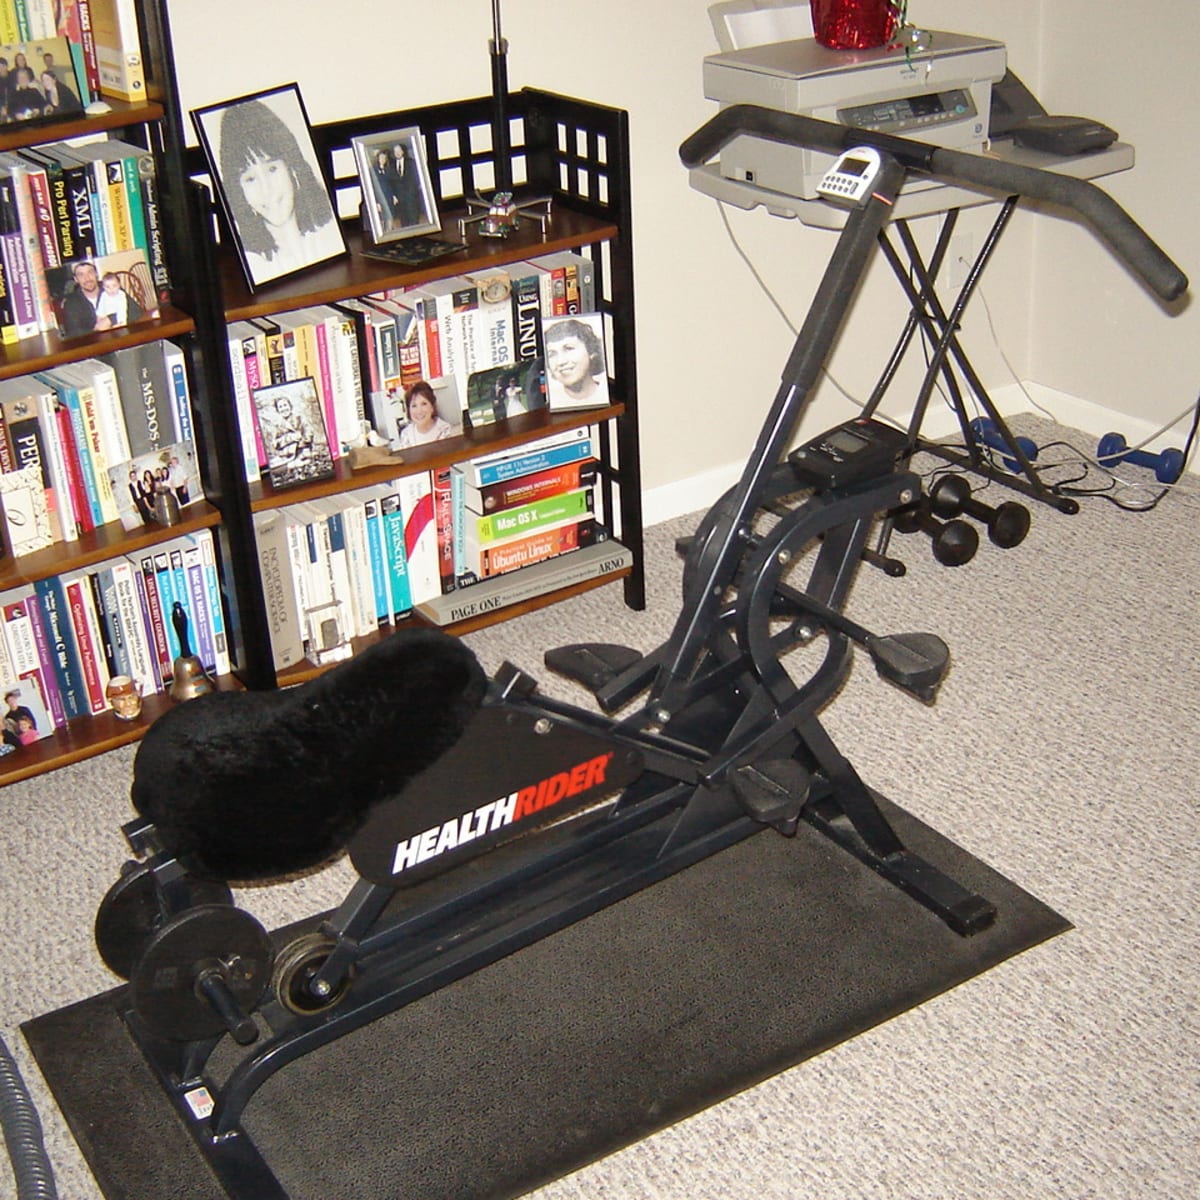 healthrider recumbent exercise bike